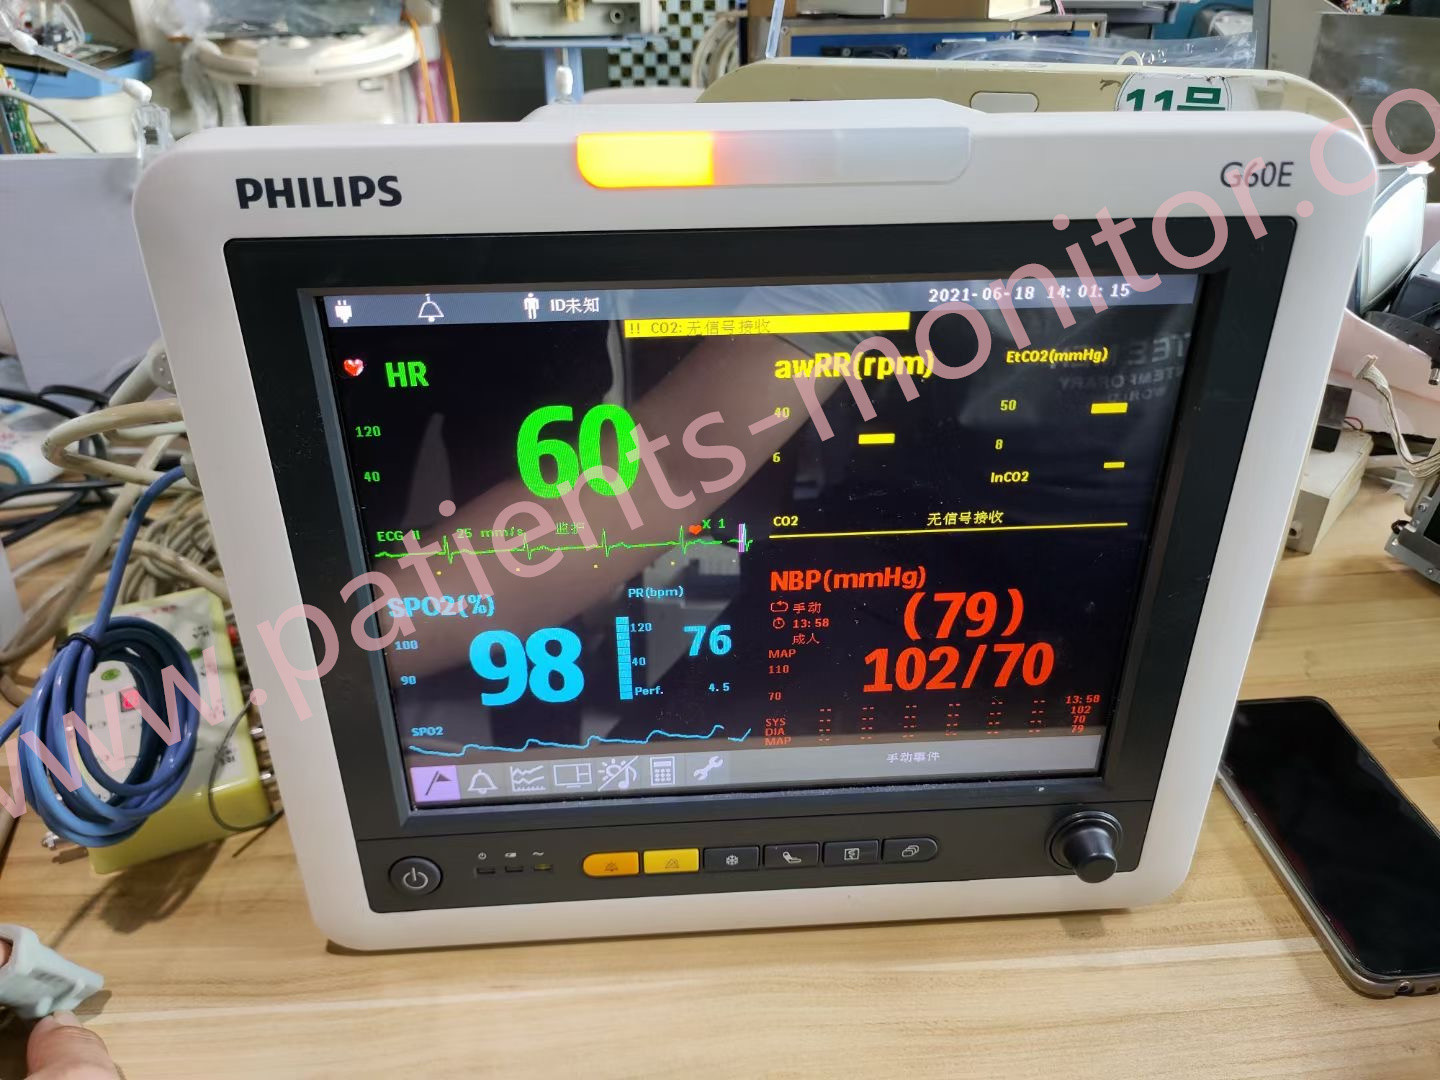 Philip G60E เครื่องตรวจผู้ป่วยไอซียูสำหรับคลินิกโรงพยาบาล